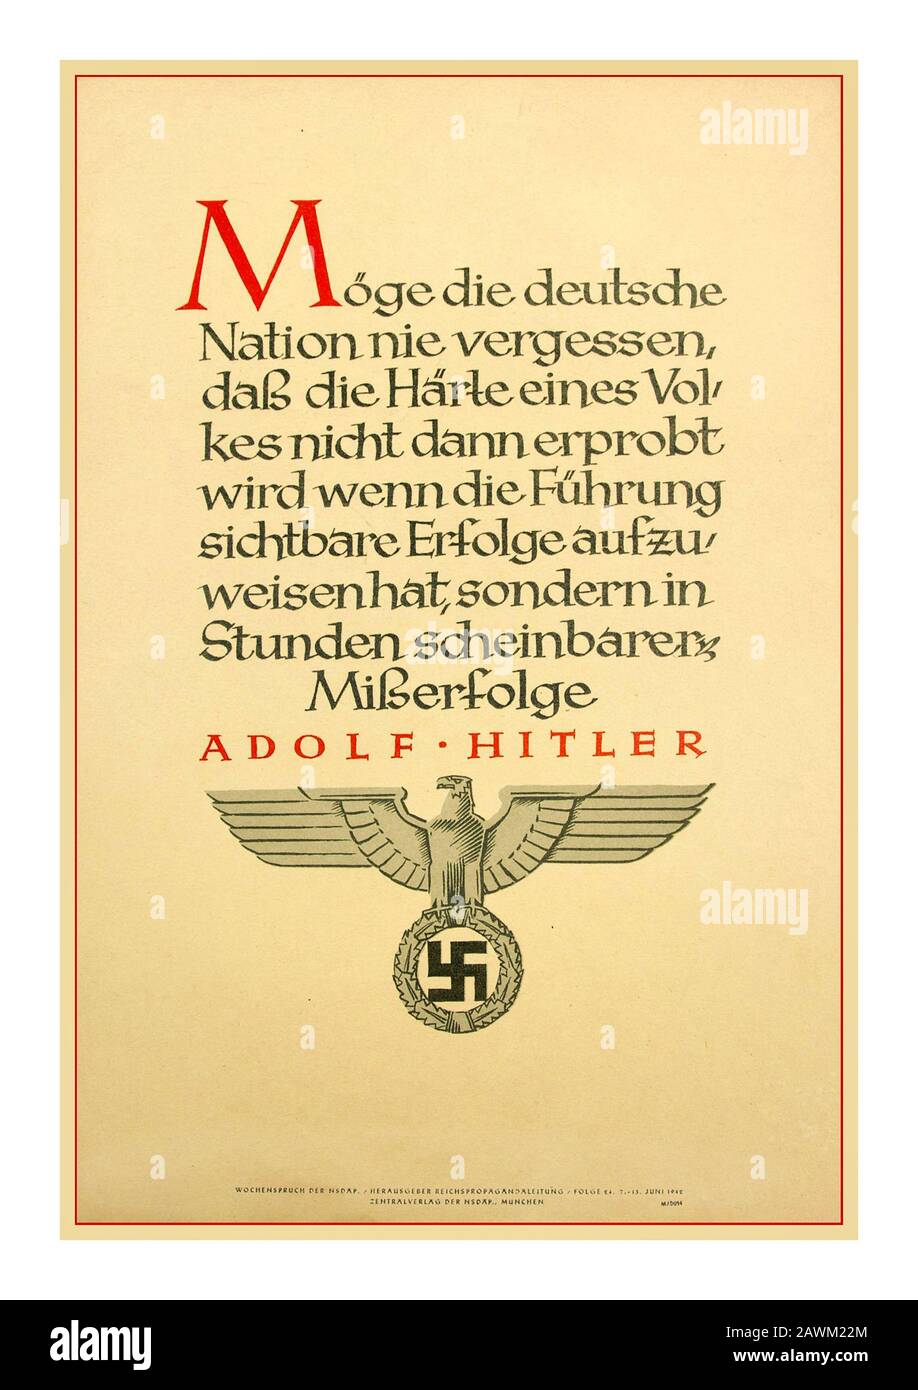 WW2 message de propagande de la maison nazie allemande d'Adolf Hitler NSDAP Wochenspruch (mini-affiche de propagande) – 7-13 juin 1942; Ces « Wochensprucher » étaient des affiches de propagande officielles publiées par le NSDAP qui seraient accrochées dans des maisons et dans des bâtiments publics. Le texte vient d'un dicton d'Adolf Hitler « alors la nation allemande n'oublie jamais que la dureté d'un peuple ne sera pas mise à l'épreuve si la direction montre un succès visible Mais dans les heures des échecs apparents" : Adolf Hitler... avec la Swastika nazie officielle et l'écusson de l'aigle au bas de la Seconde Guerre mondiale Seconde Guerre mondiale l'Allemagne nazie Banque D'Images